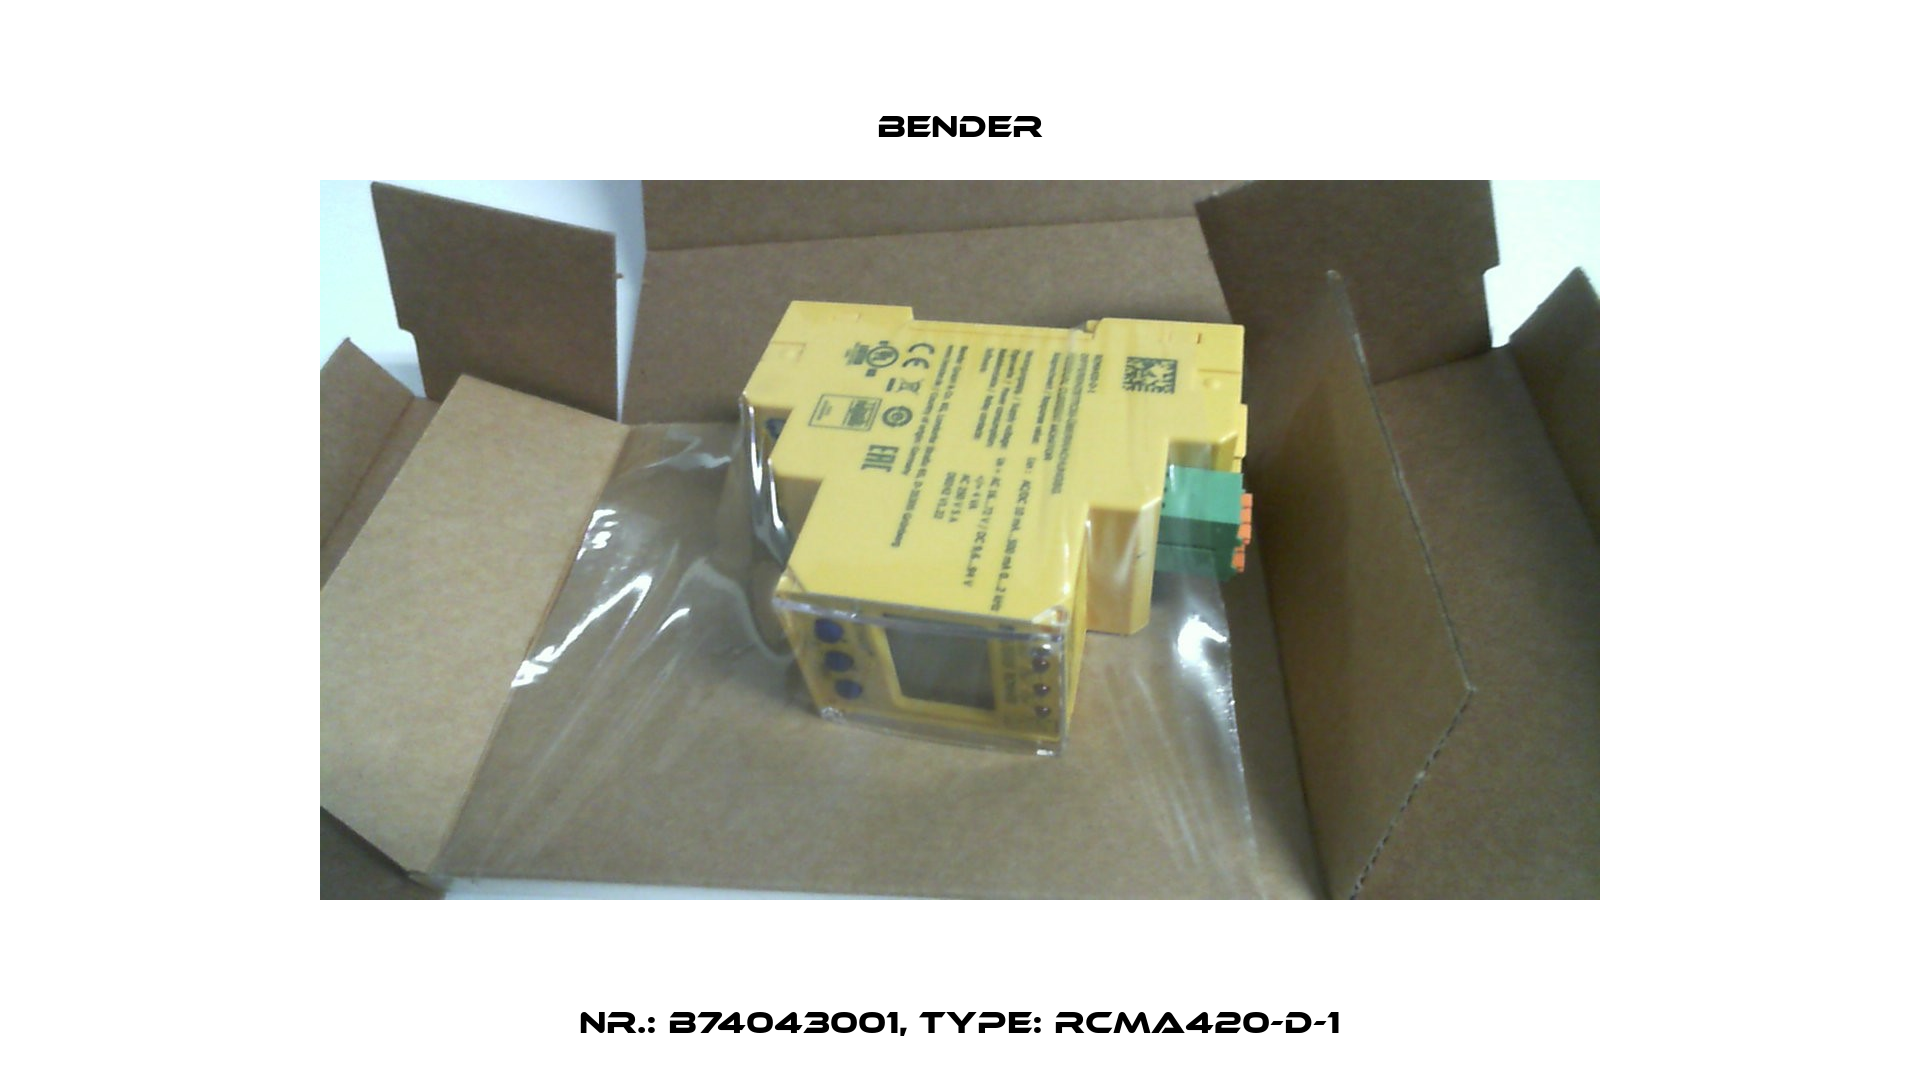 Nr.: B74043001, Type: RCMA420-D-1 Bender